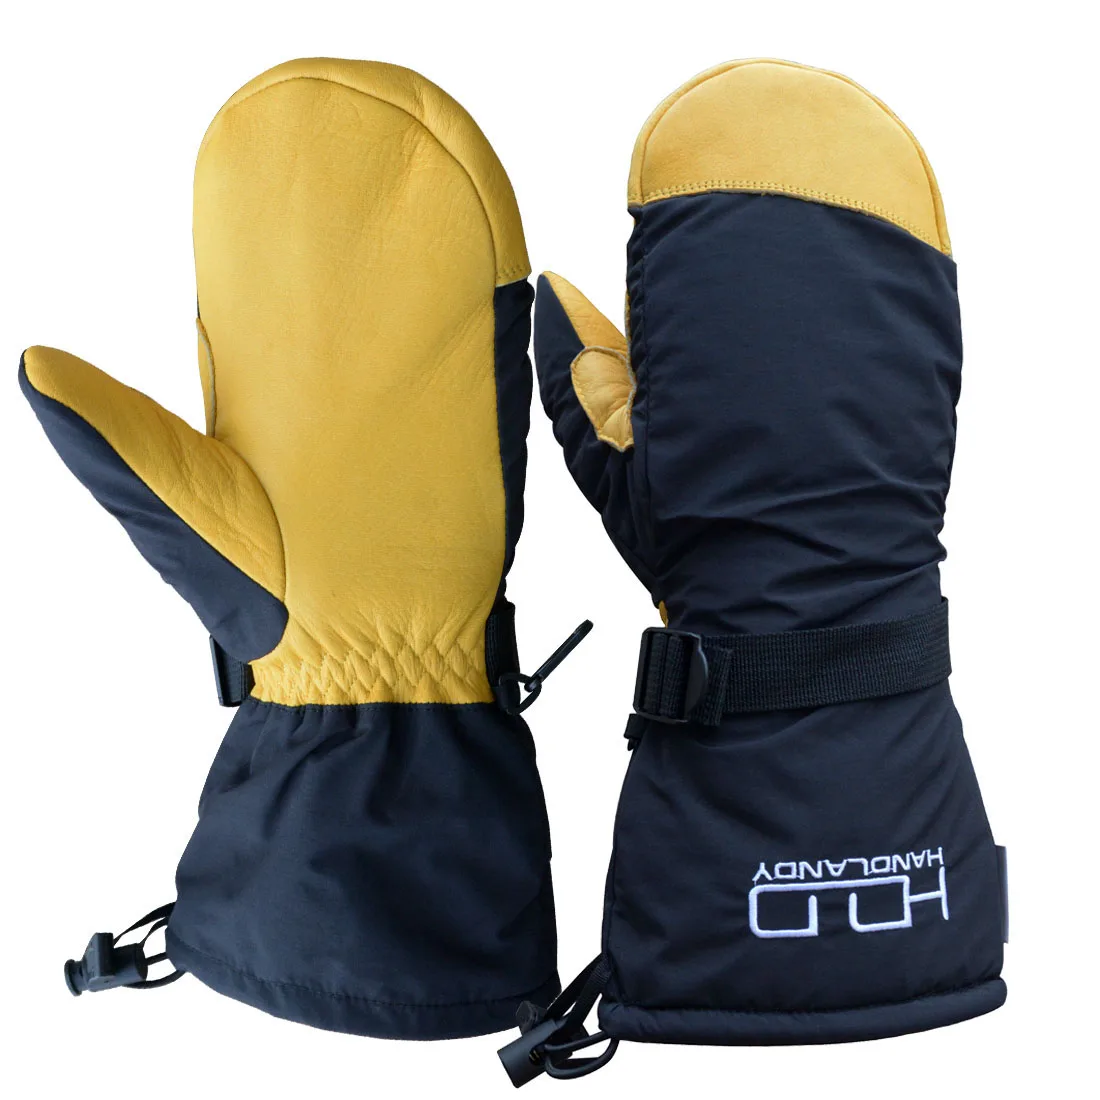 PRI gauntlet water resistant windproof cowhide leather winter thermal warm snow ski gloves